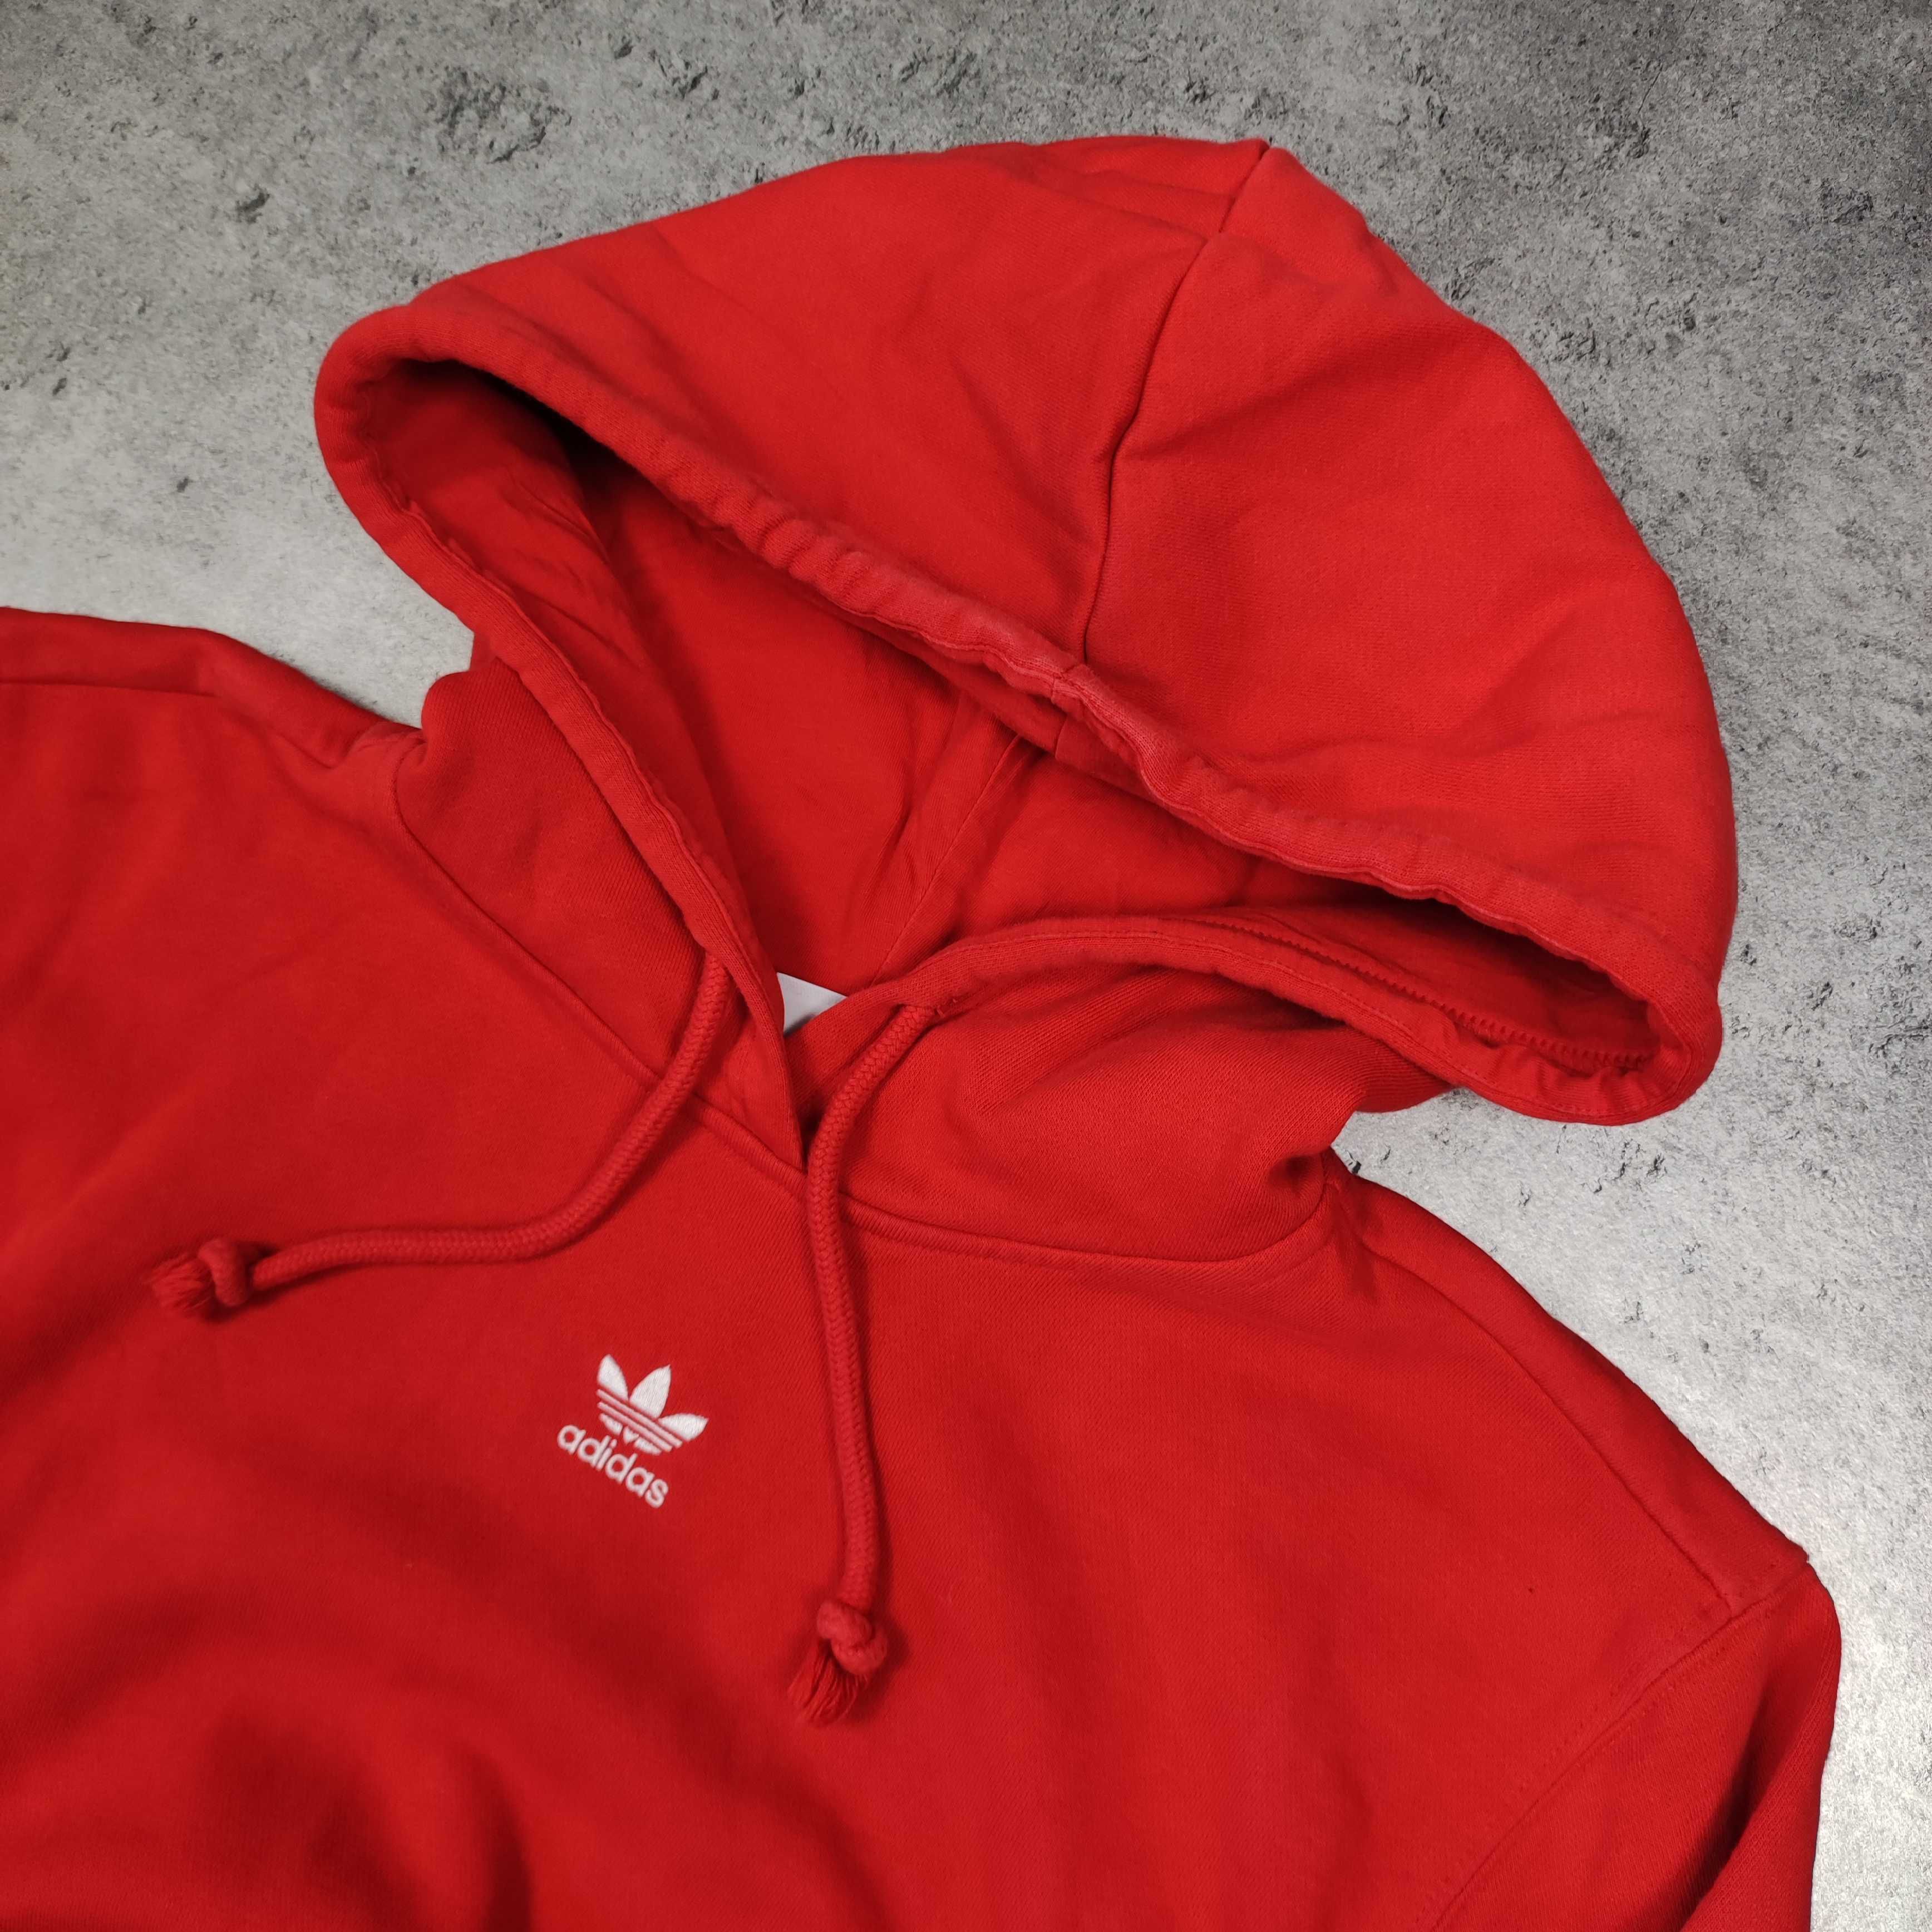 MĘSKA Bluza Klasyczna Małe Logo Haft Czerwona Adidas Bawełna Grubsza